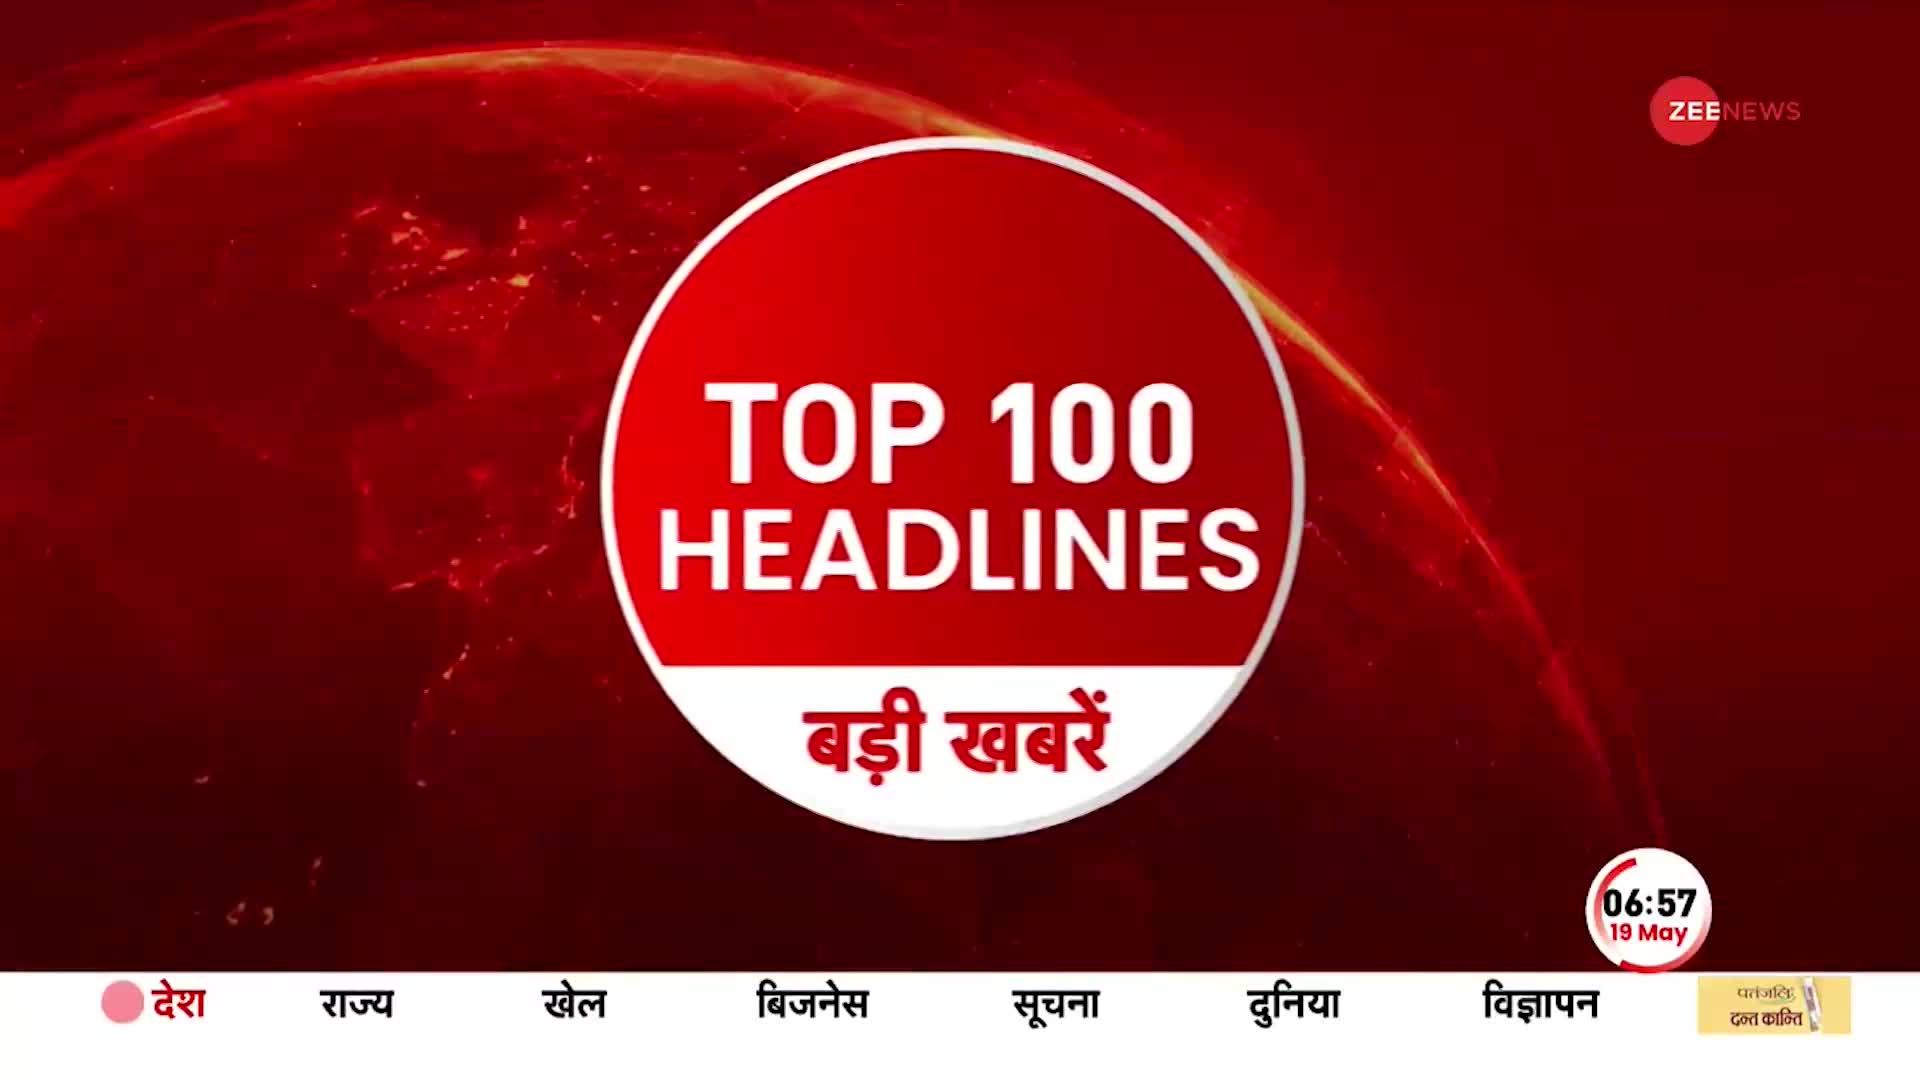 TOP 100: सुबह की 100 बड़ी खबरें सुपरफास्ट अंदाज में